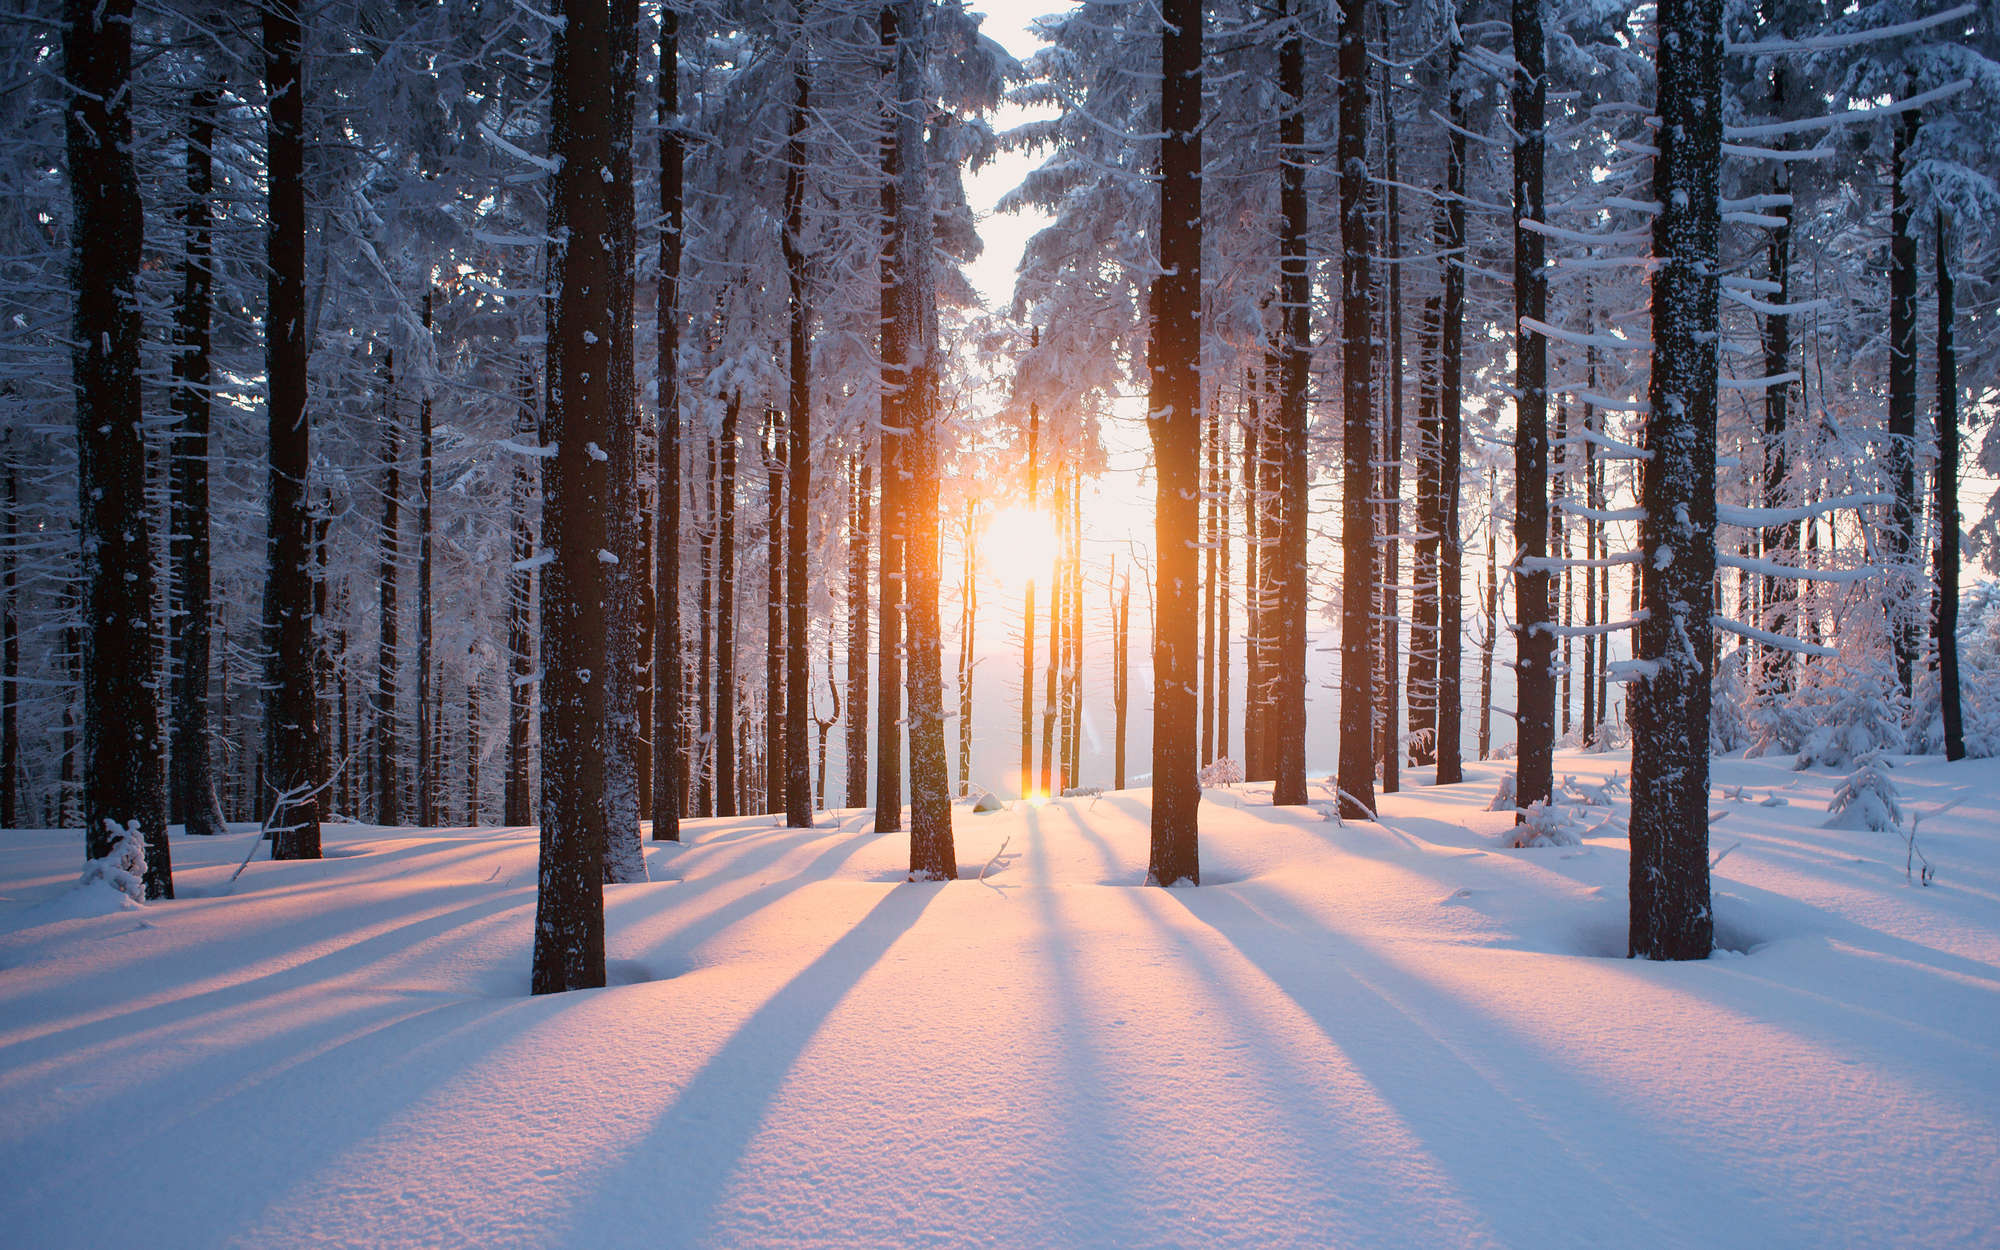             Fototapete Schnee im Winterwald – Perlmutt Glattvlies
        